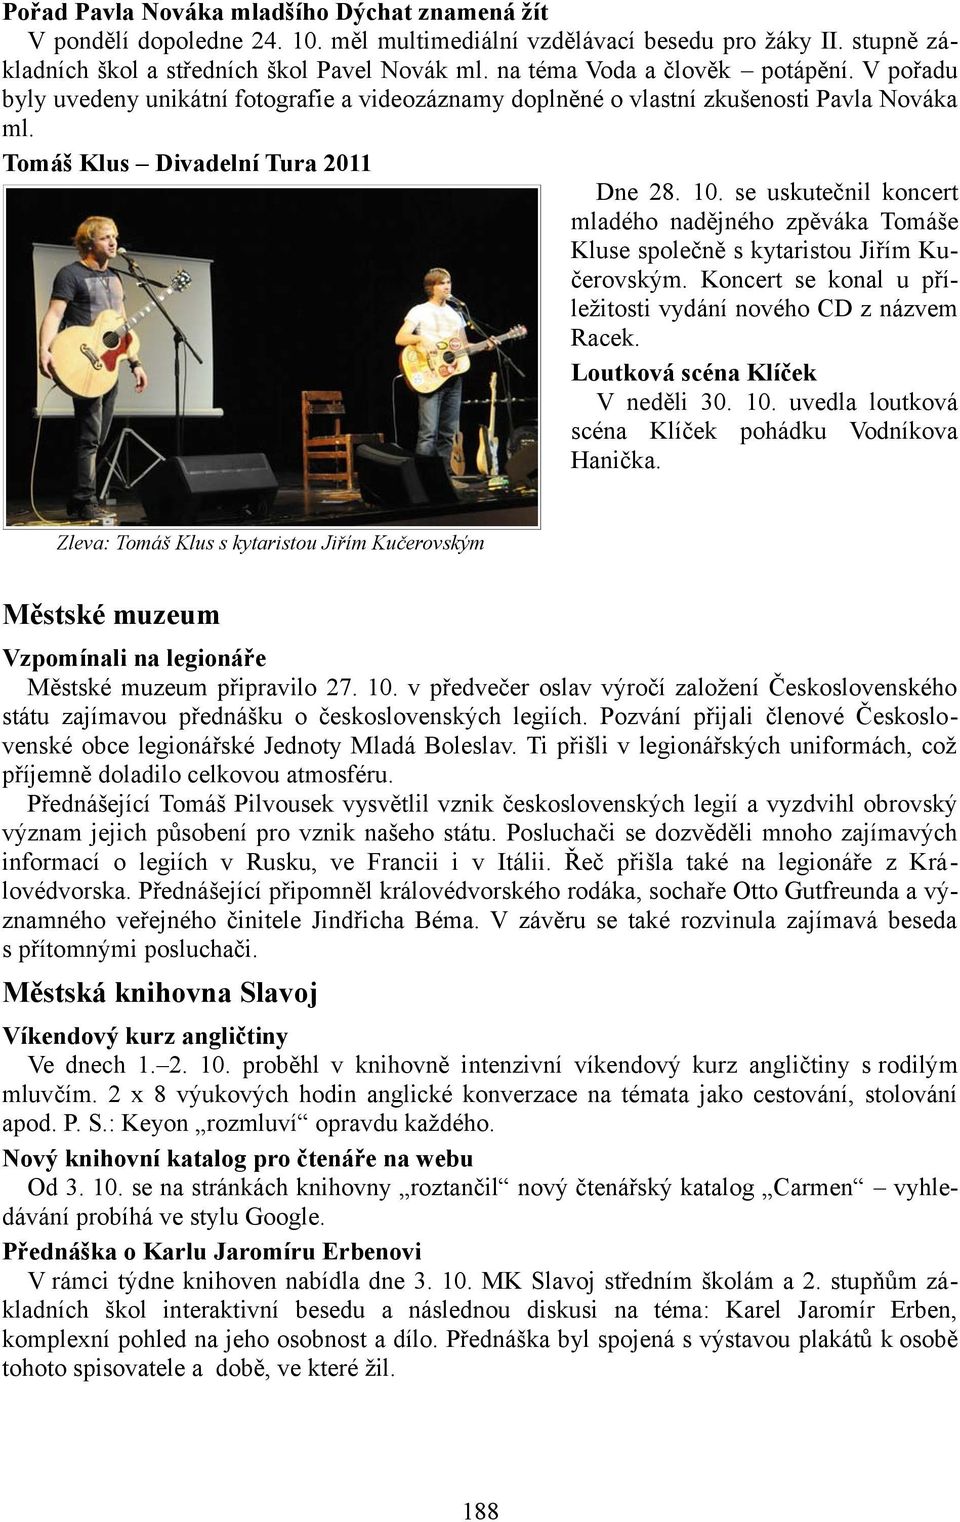 se uskutečnil koncert mladého nadějného zpěváka Tomáše Kluse společně s kytaristou Jiřím Kučerovským. Koncert se konal u příležitosti vydání nového CD z názvem Racek.